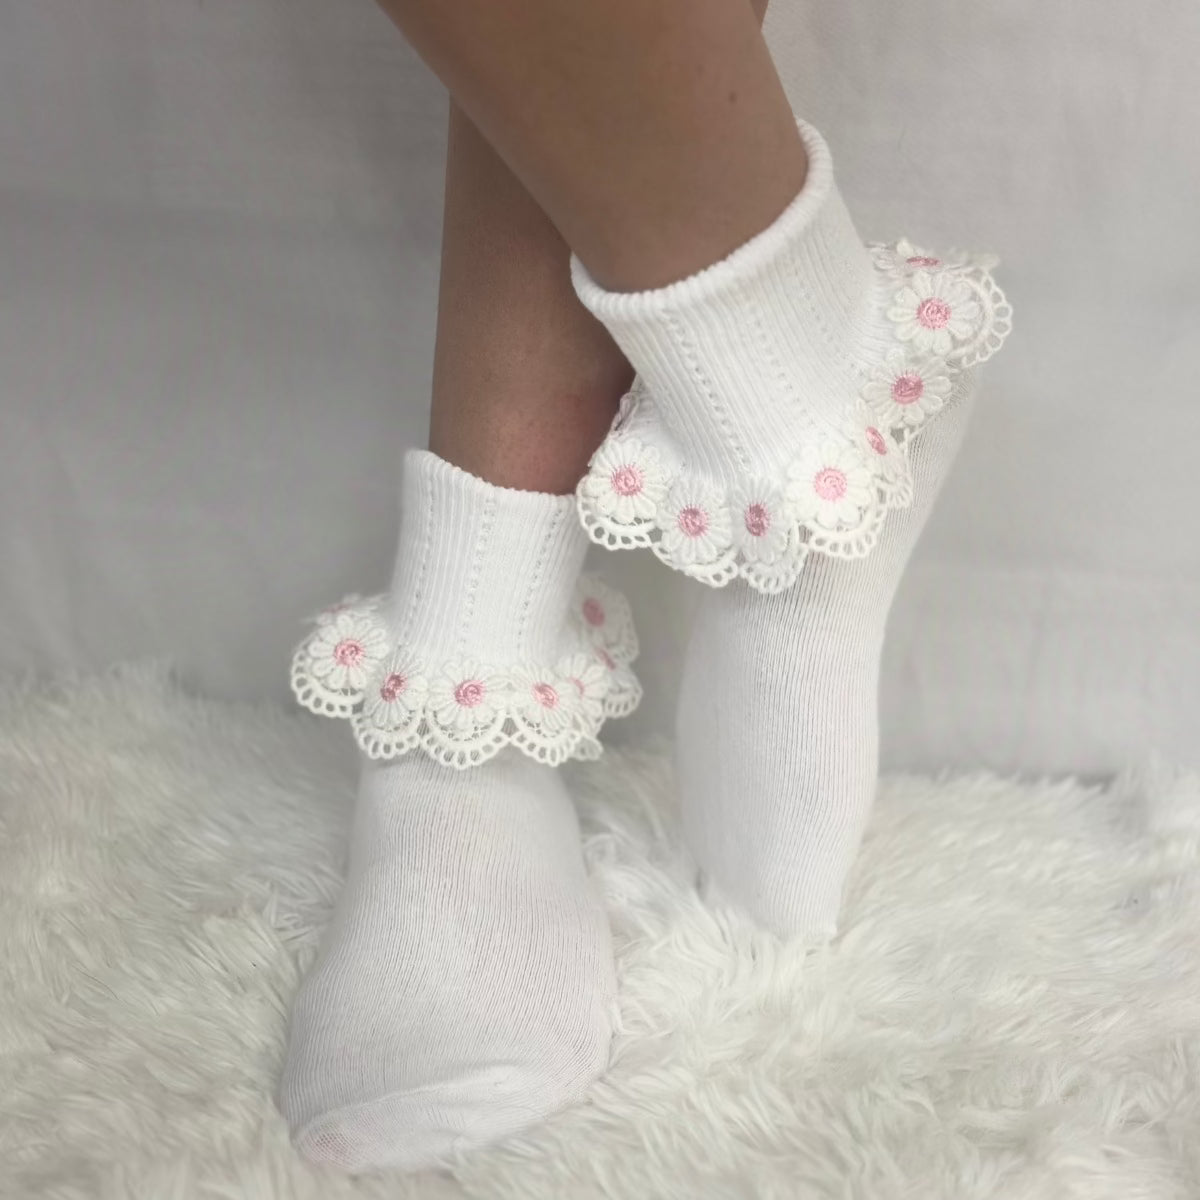 DAISY MAE  lace cuff socks - white pink